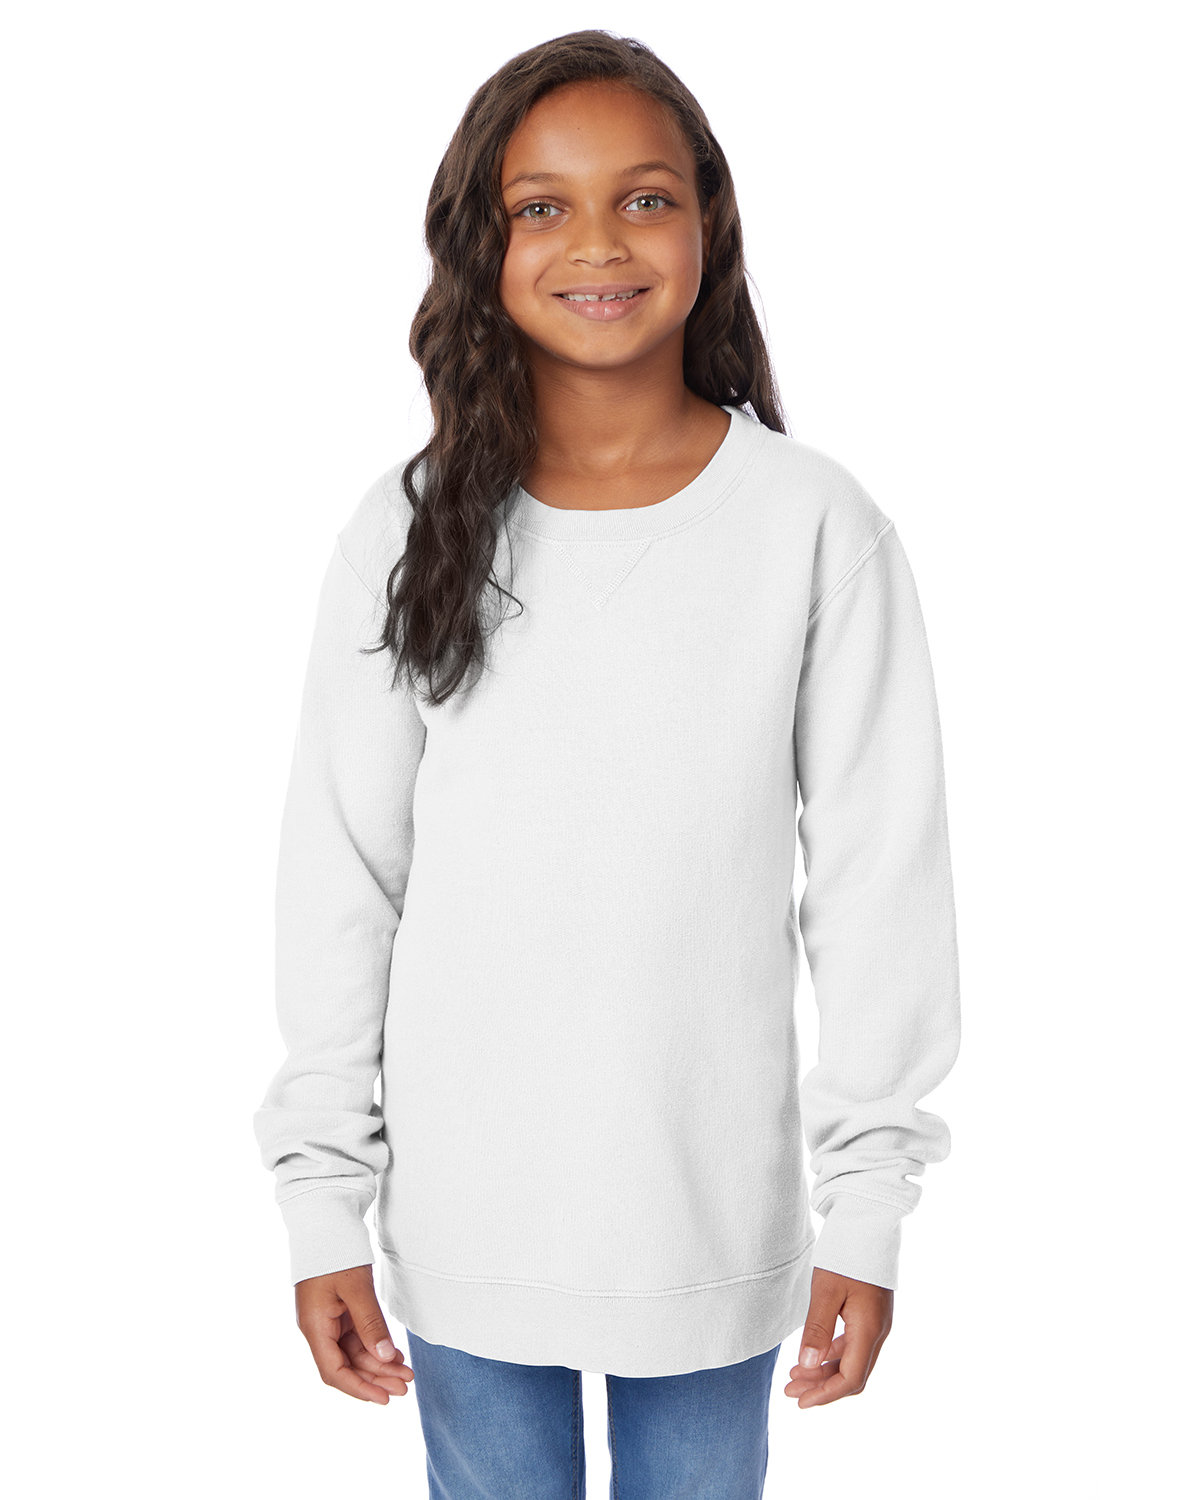 Youth Fleece Sweatshirt-